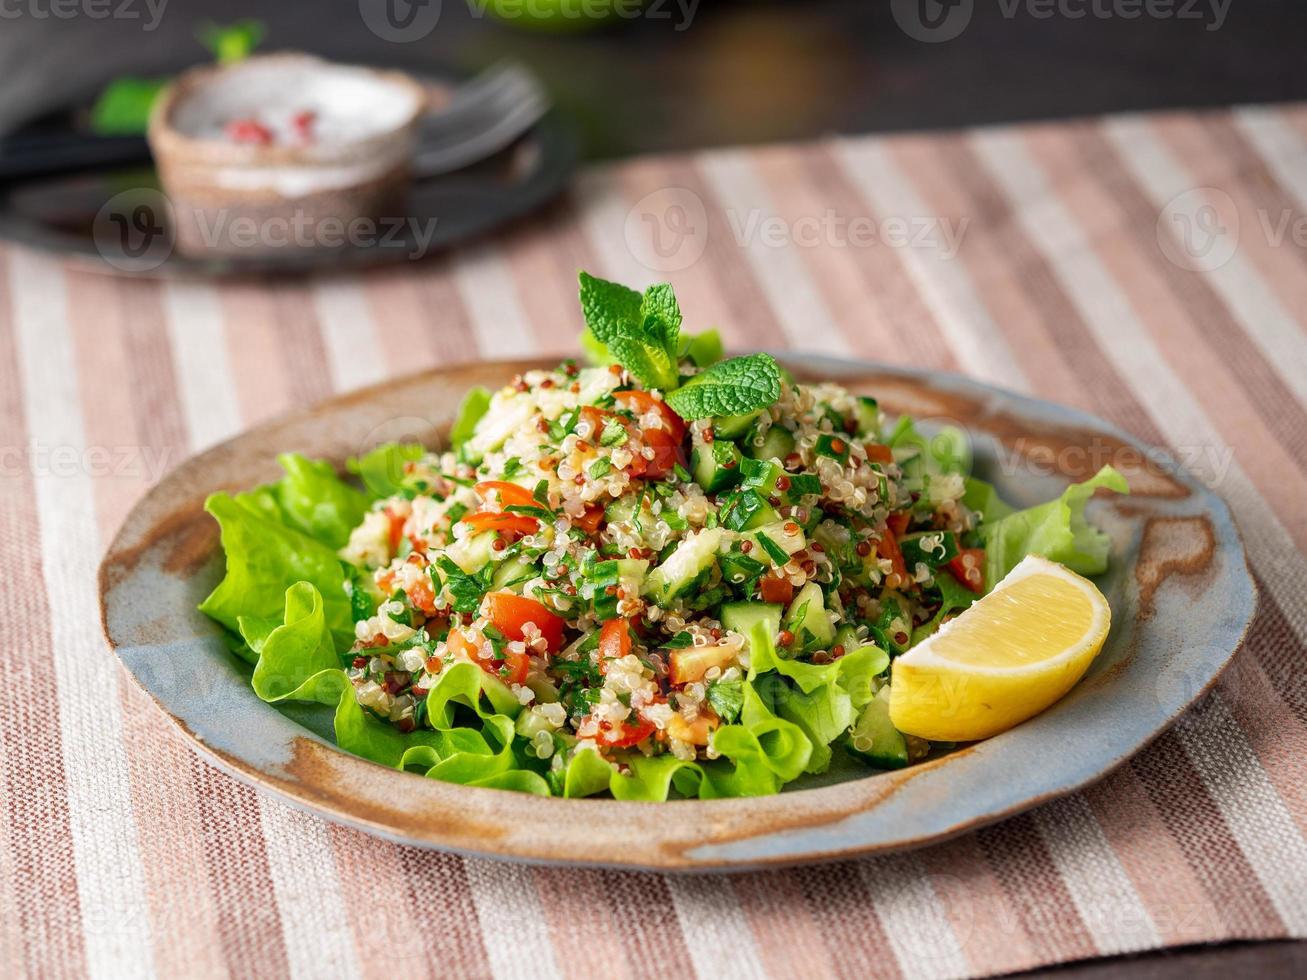 salade de taboulé au quinoa. cuisine orientale avec mélange de légumes, régime végétalien. vue de côté, serviette en lin, vieille assiette photo